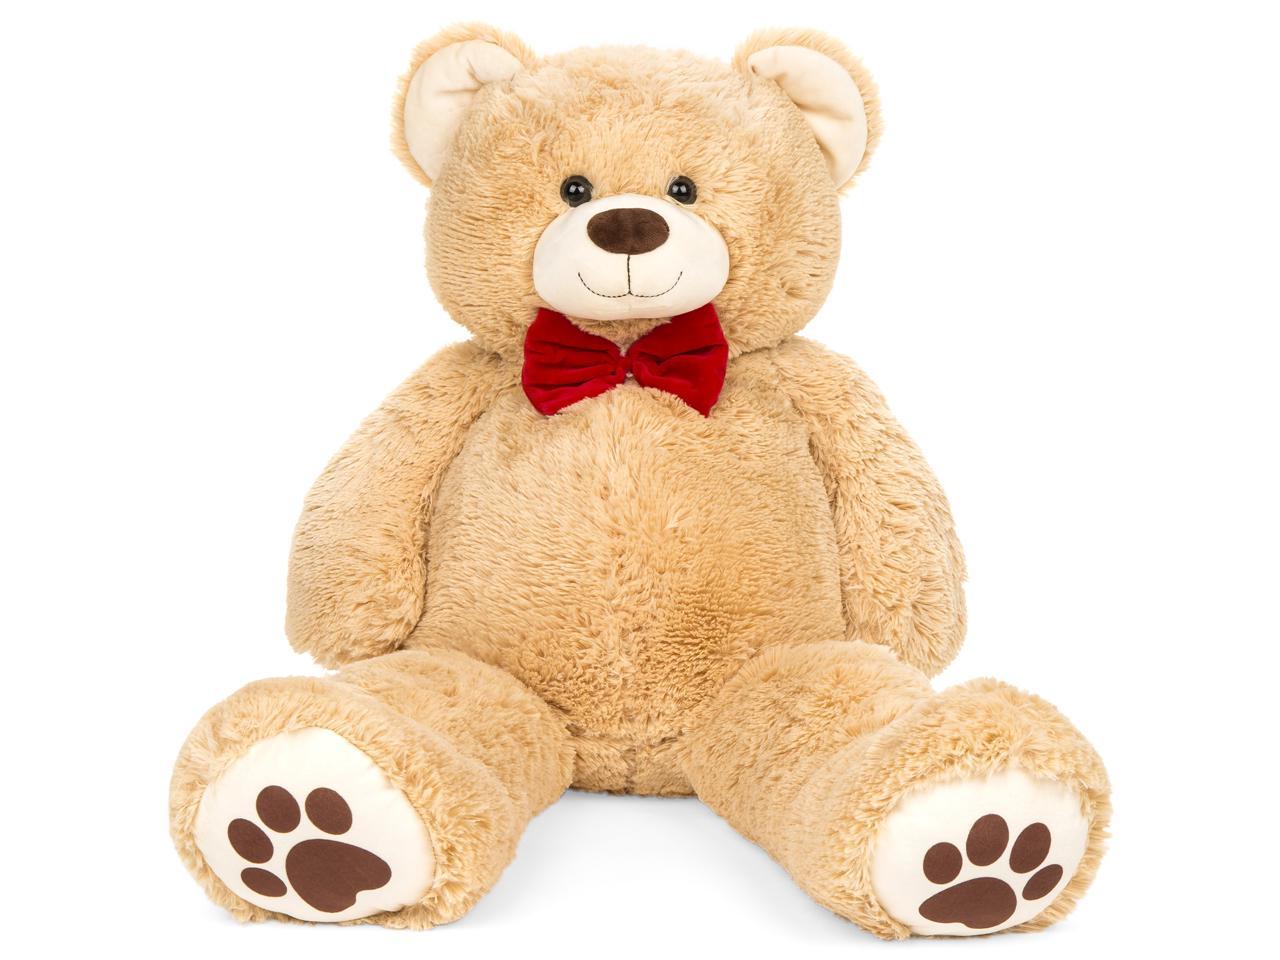 fluffy teddy bear